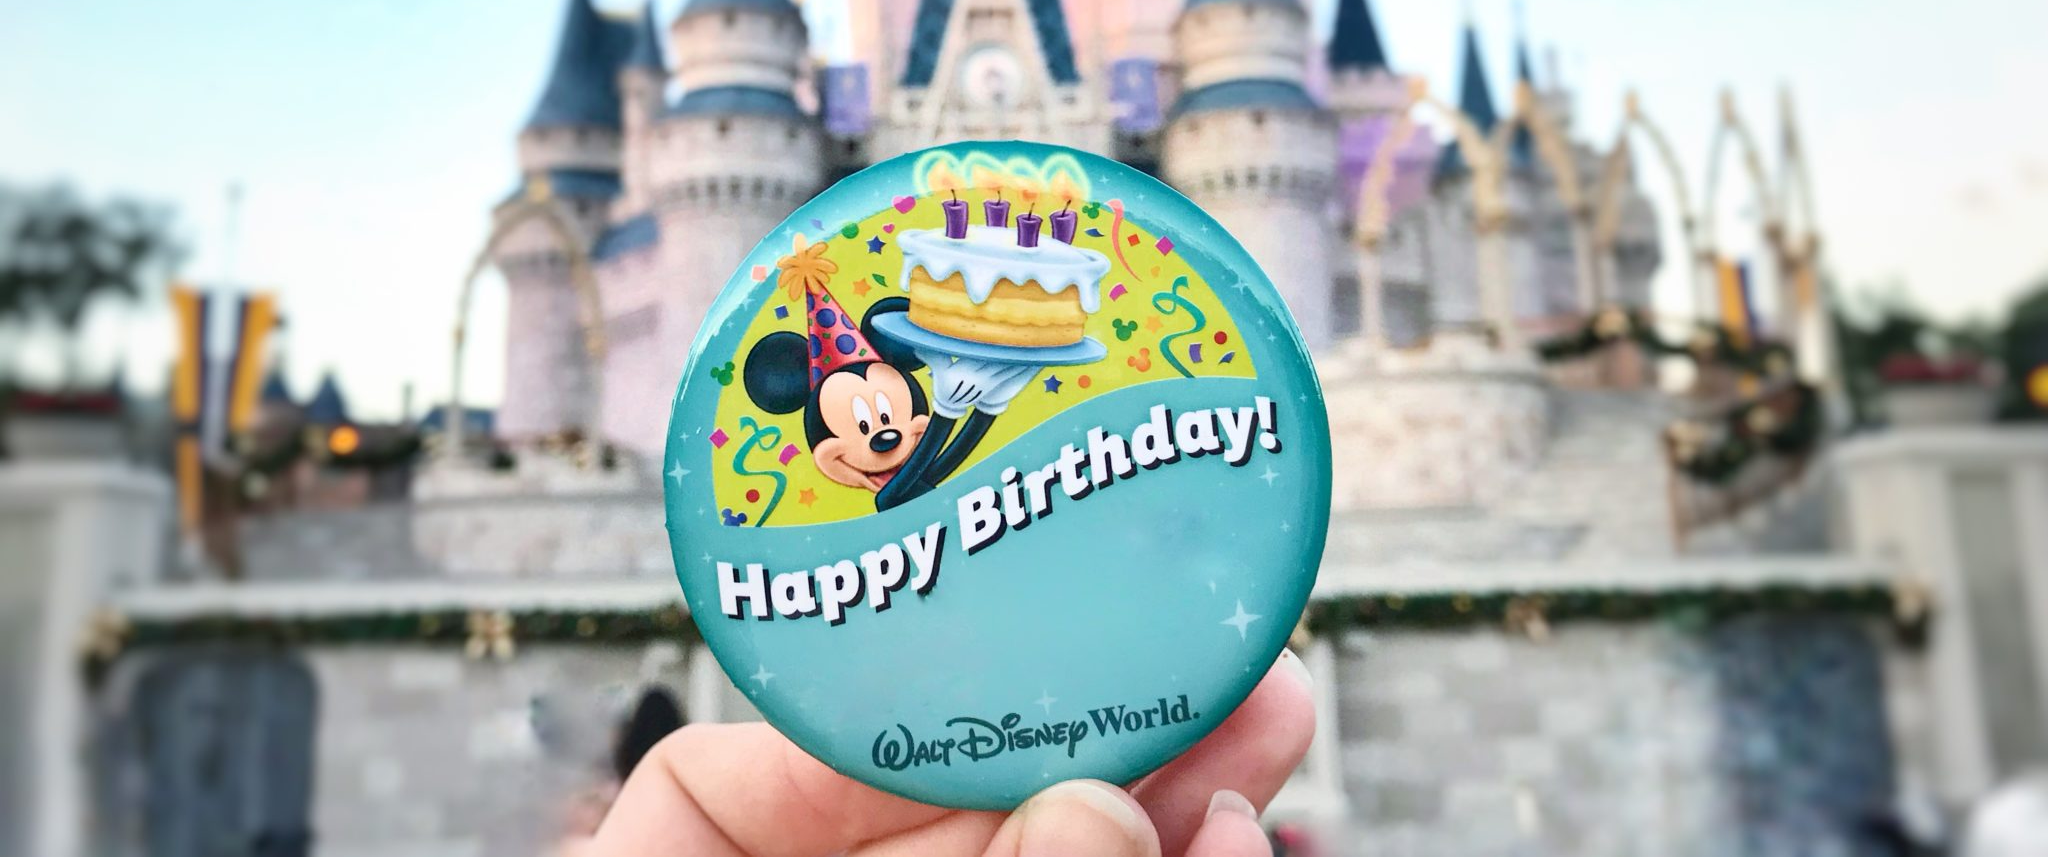 ¿Disney es gratis en tu cumpleaños?